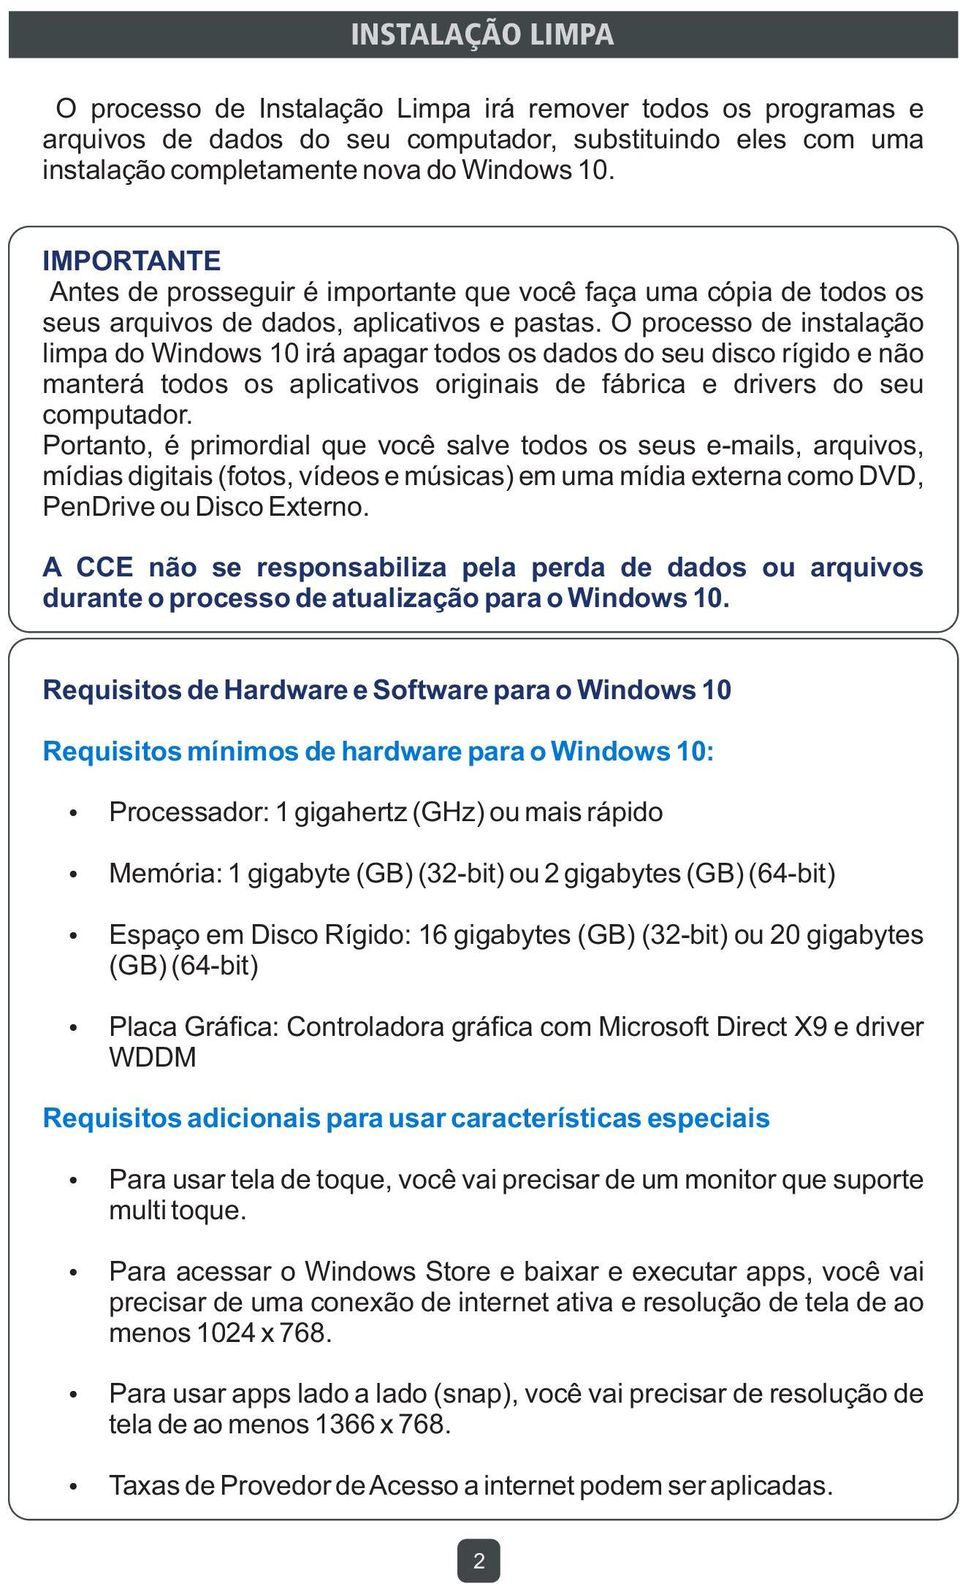 O processo de instalação limpa do Windows 10 irá apagar todos os dados do seu disco rígido e não manterá todos os aplicativos originais de fábrica e drivers do seu computador.